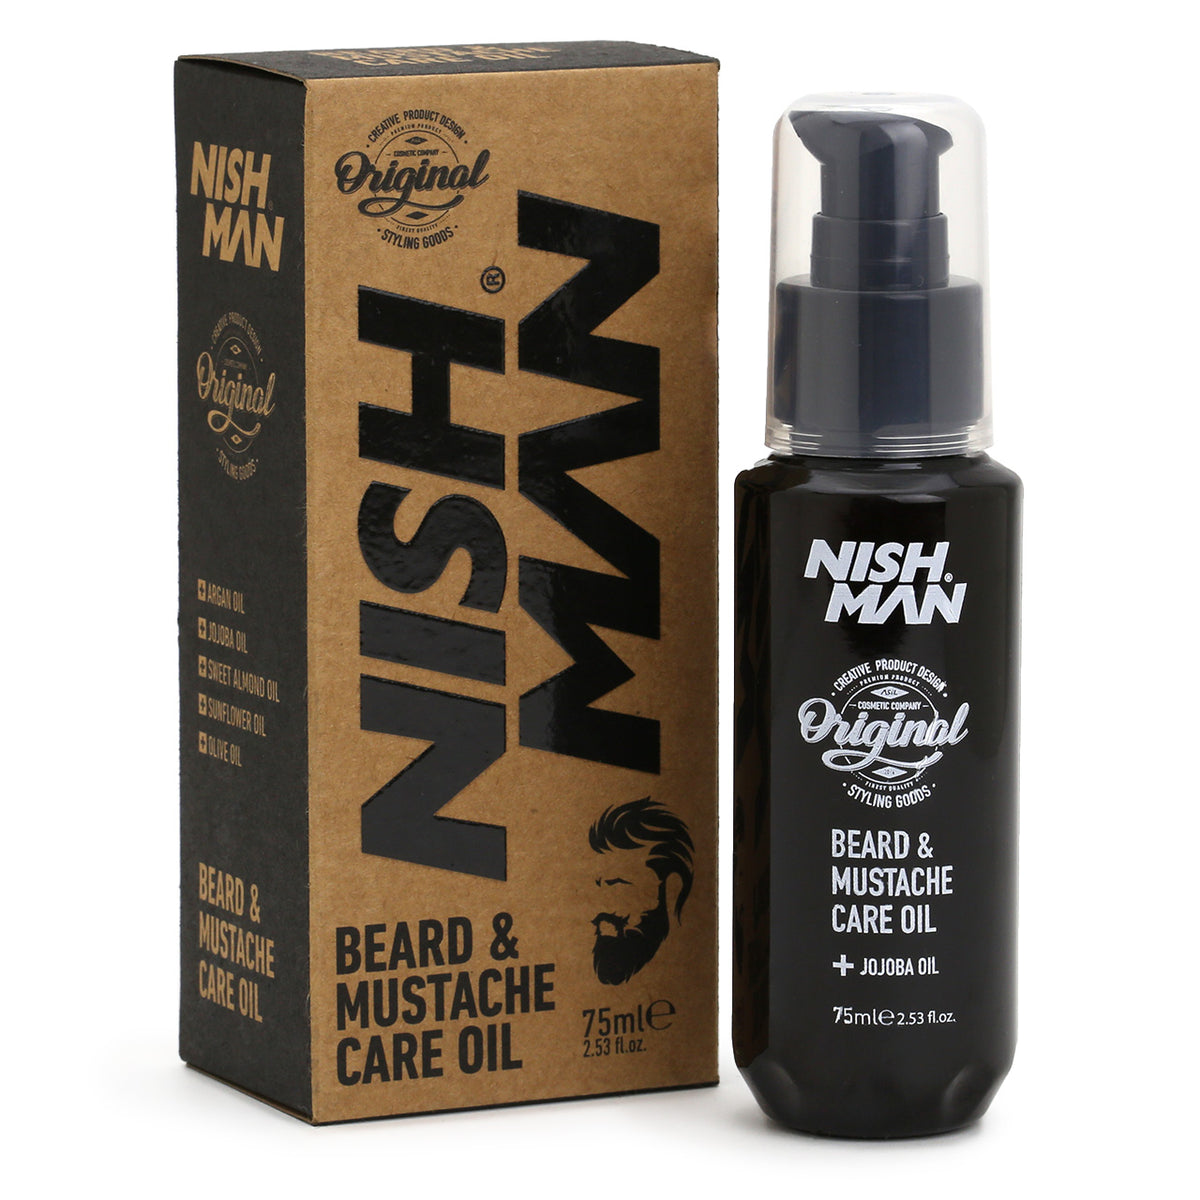 NishMan Beard &amp; Mustache Care Oil 75ml bottle and kraft packaging